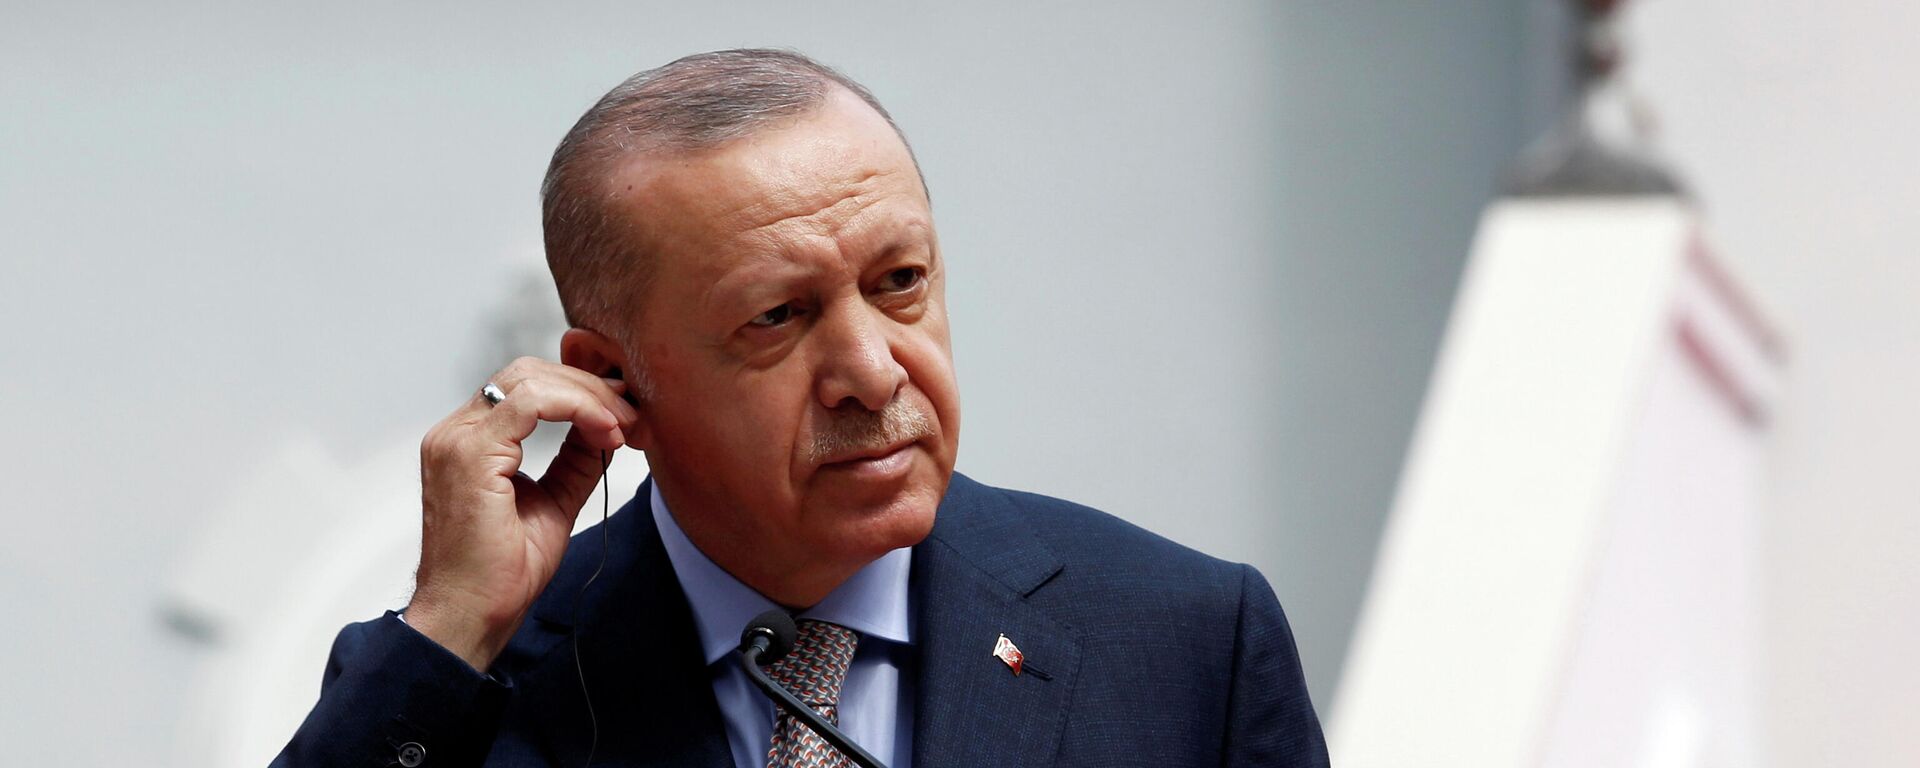 Recep Tayyip Erdogan, presidente de Turquía - Sputnik Mundo, 1920, 19.09.2021